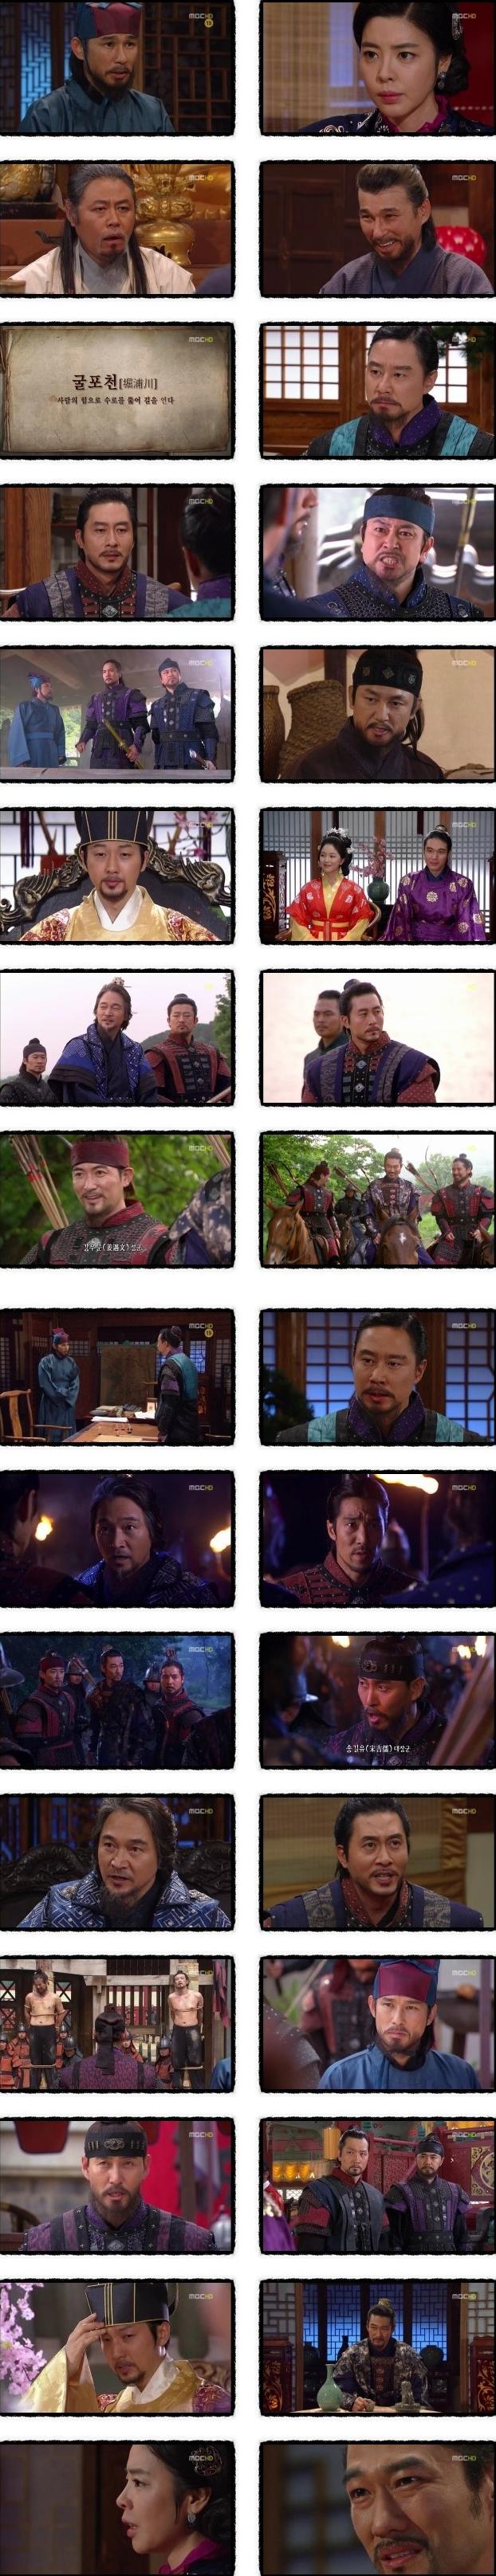 episode 36 captures for the Korean drama 'God of War'